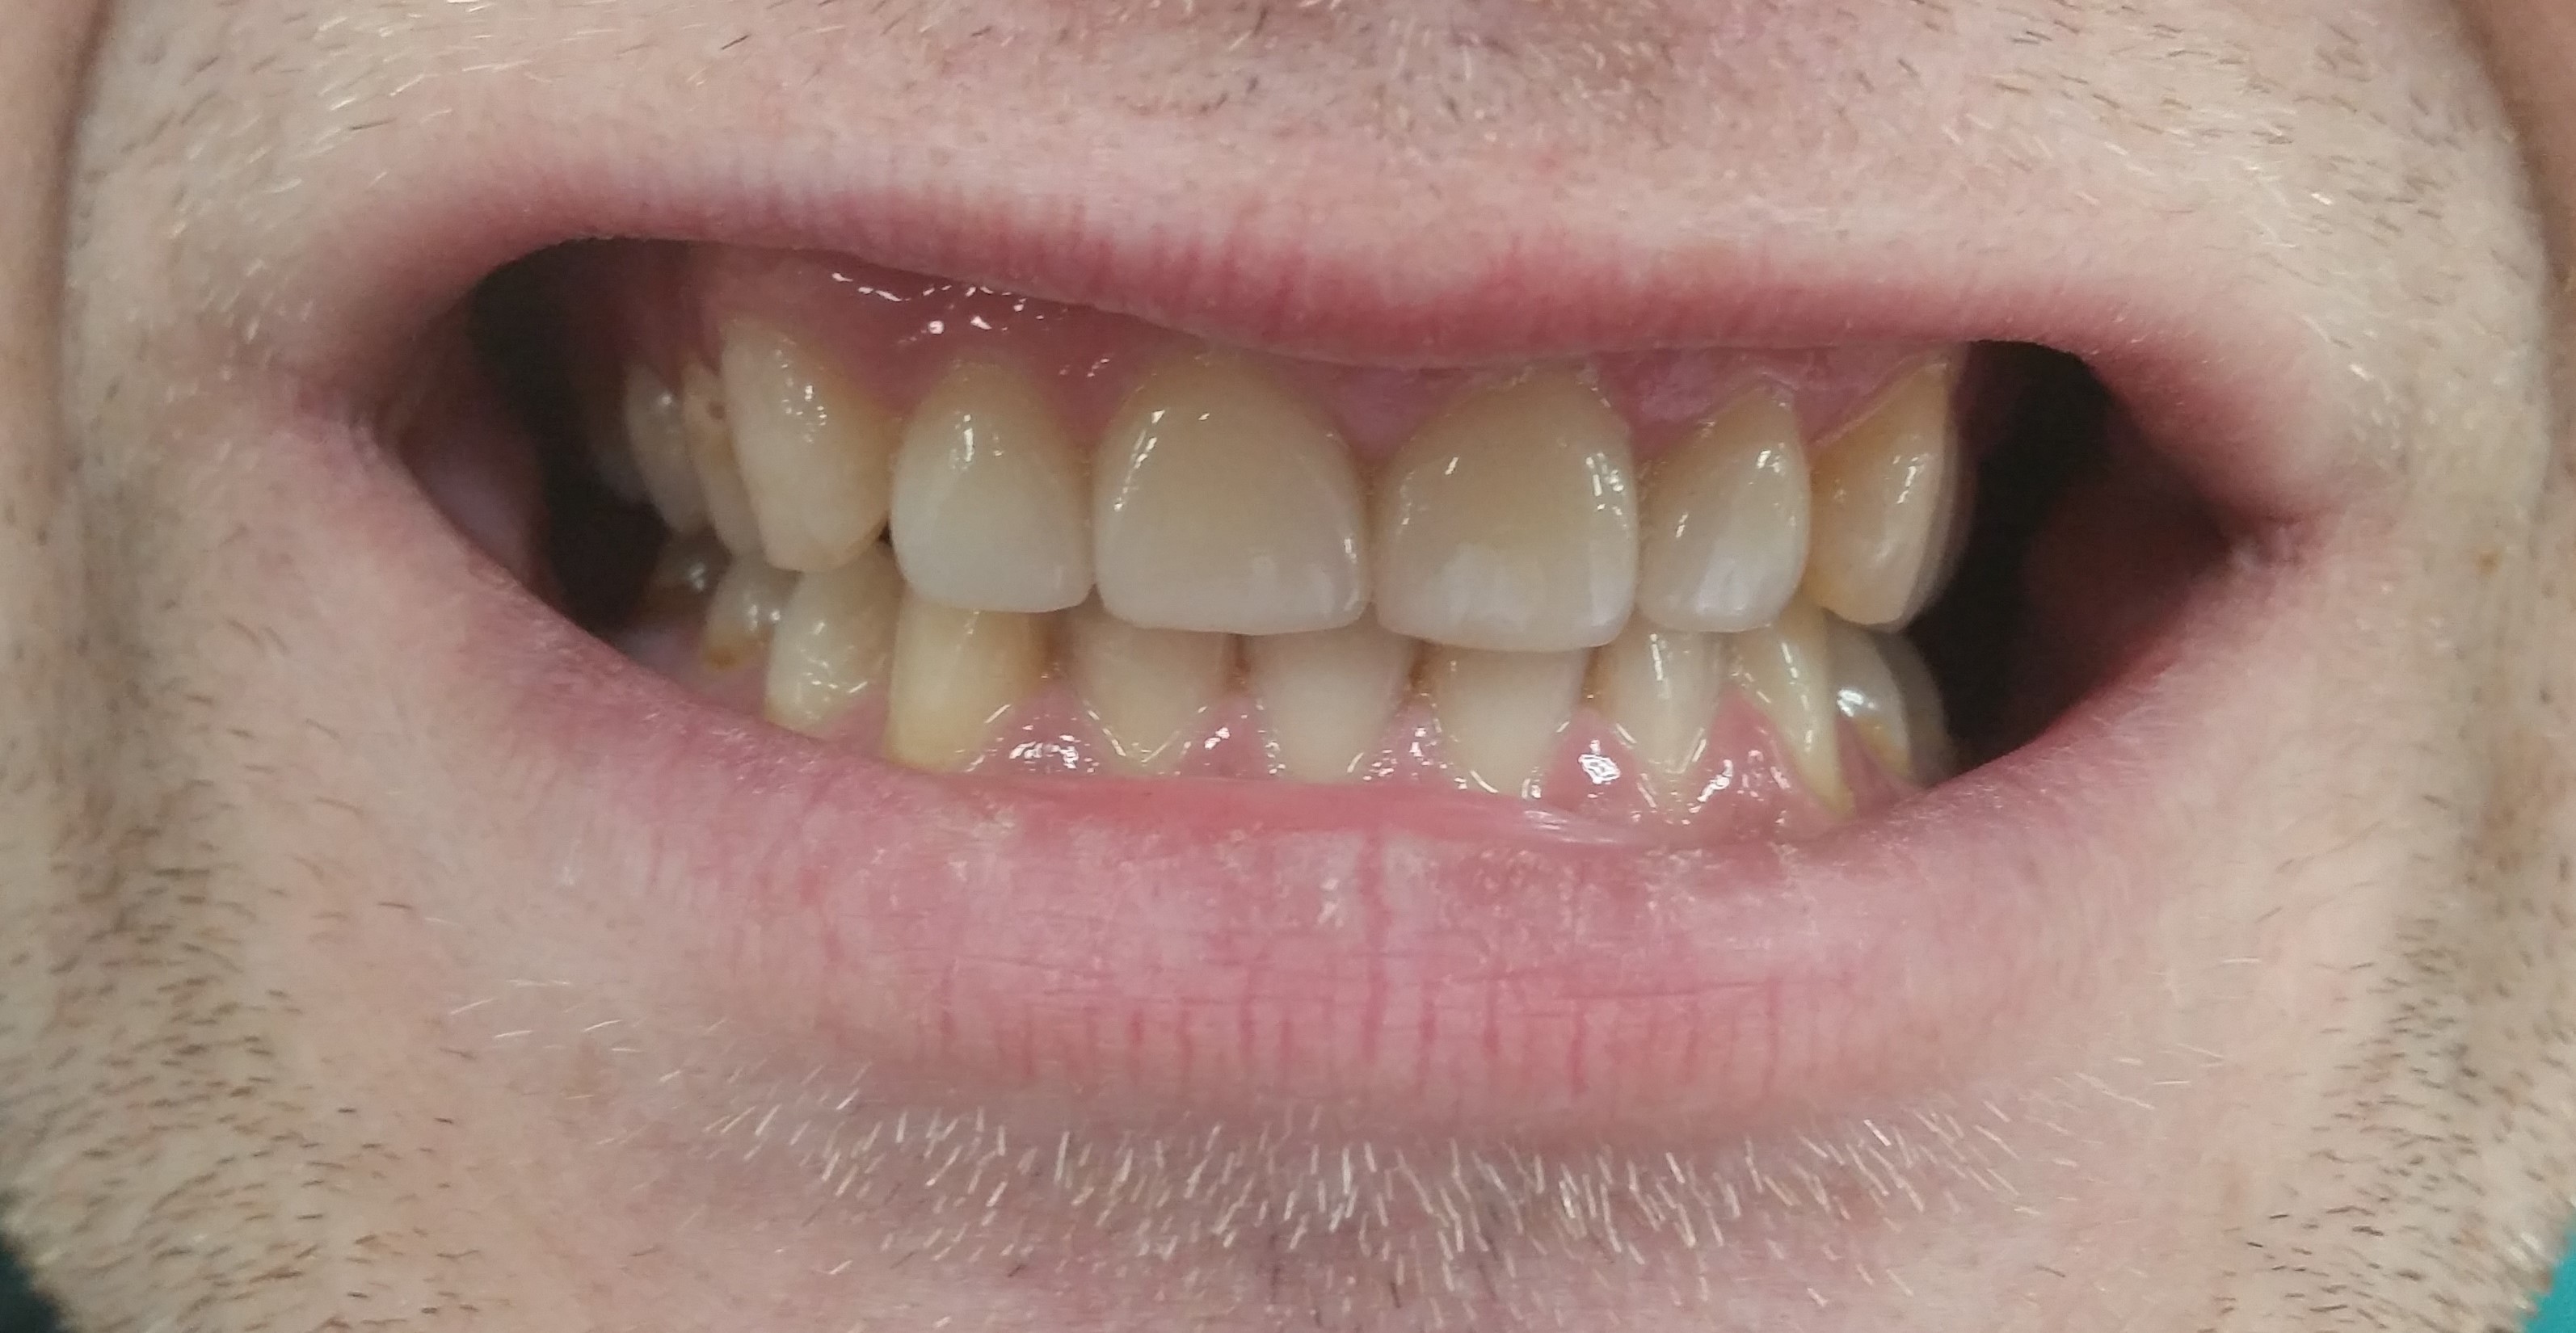 4 верхних центральных зуба-установлены коронки и виниры емах. зубы "живые" ( не депульпированы)